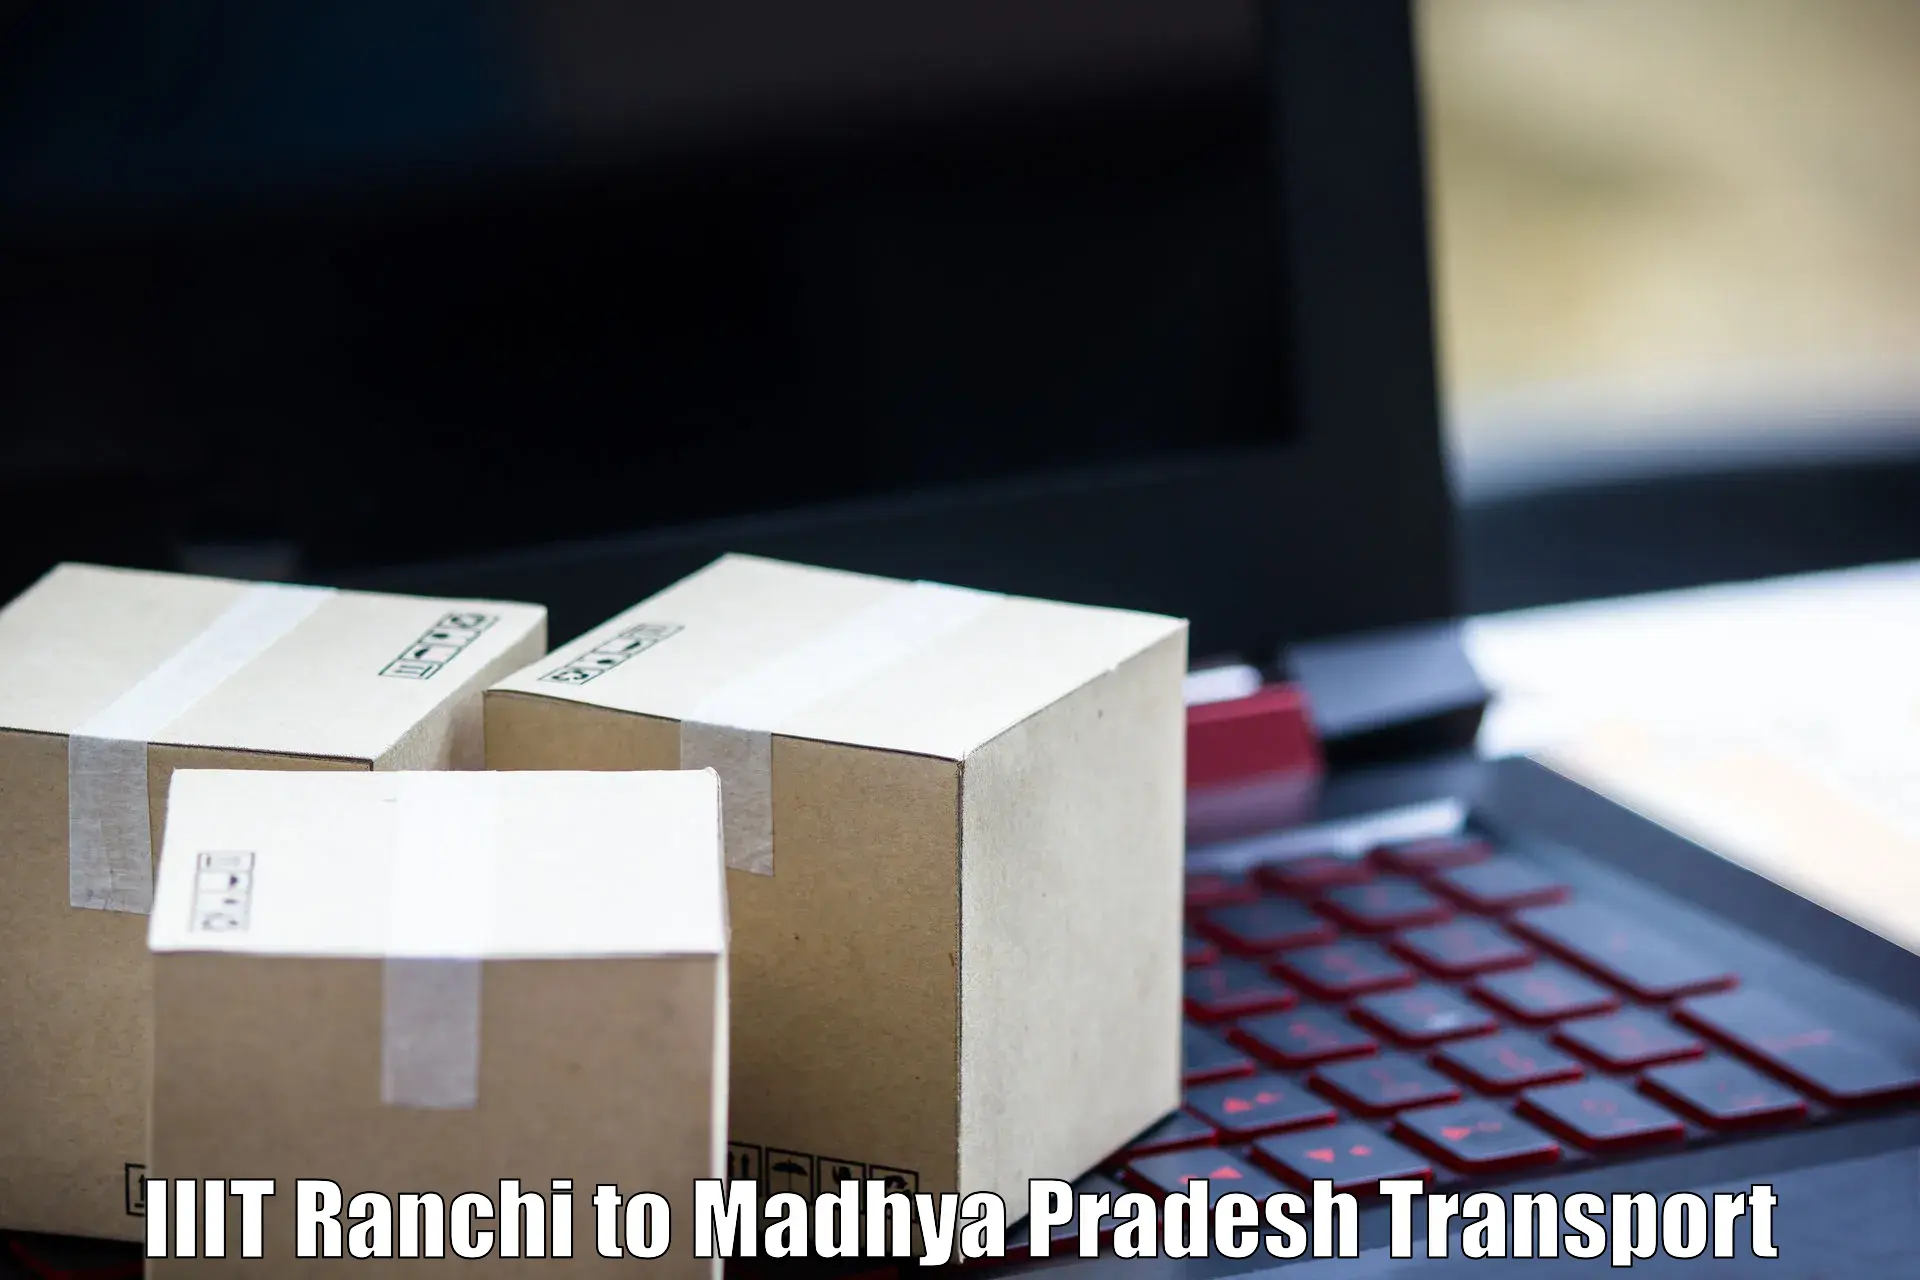 Online transport IIIT Ranchi to Garoth